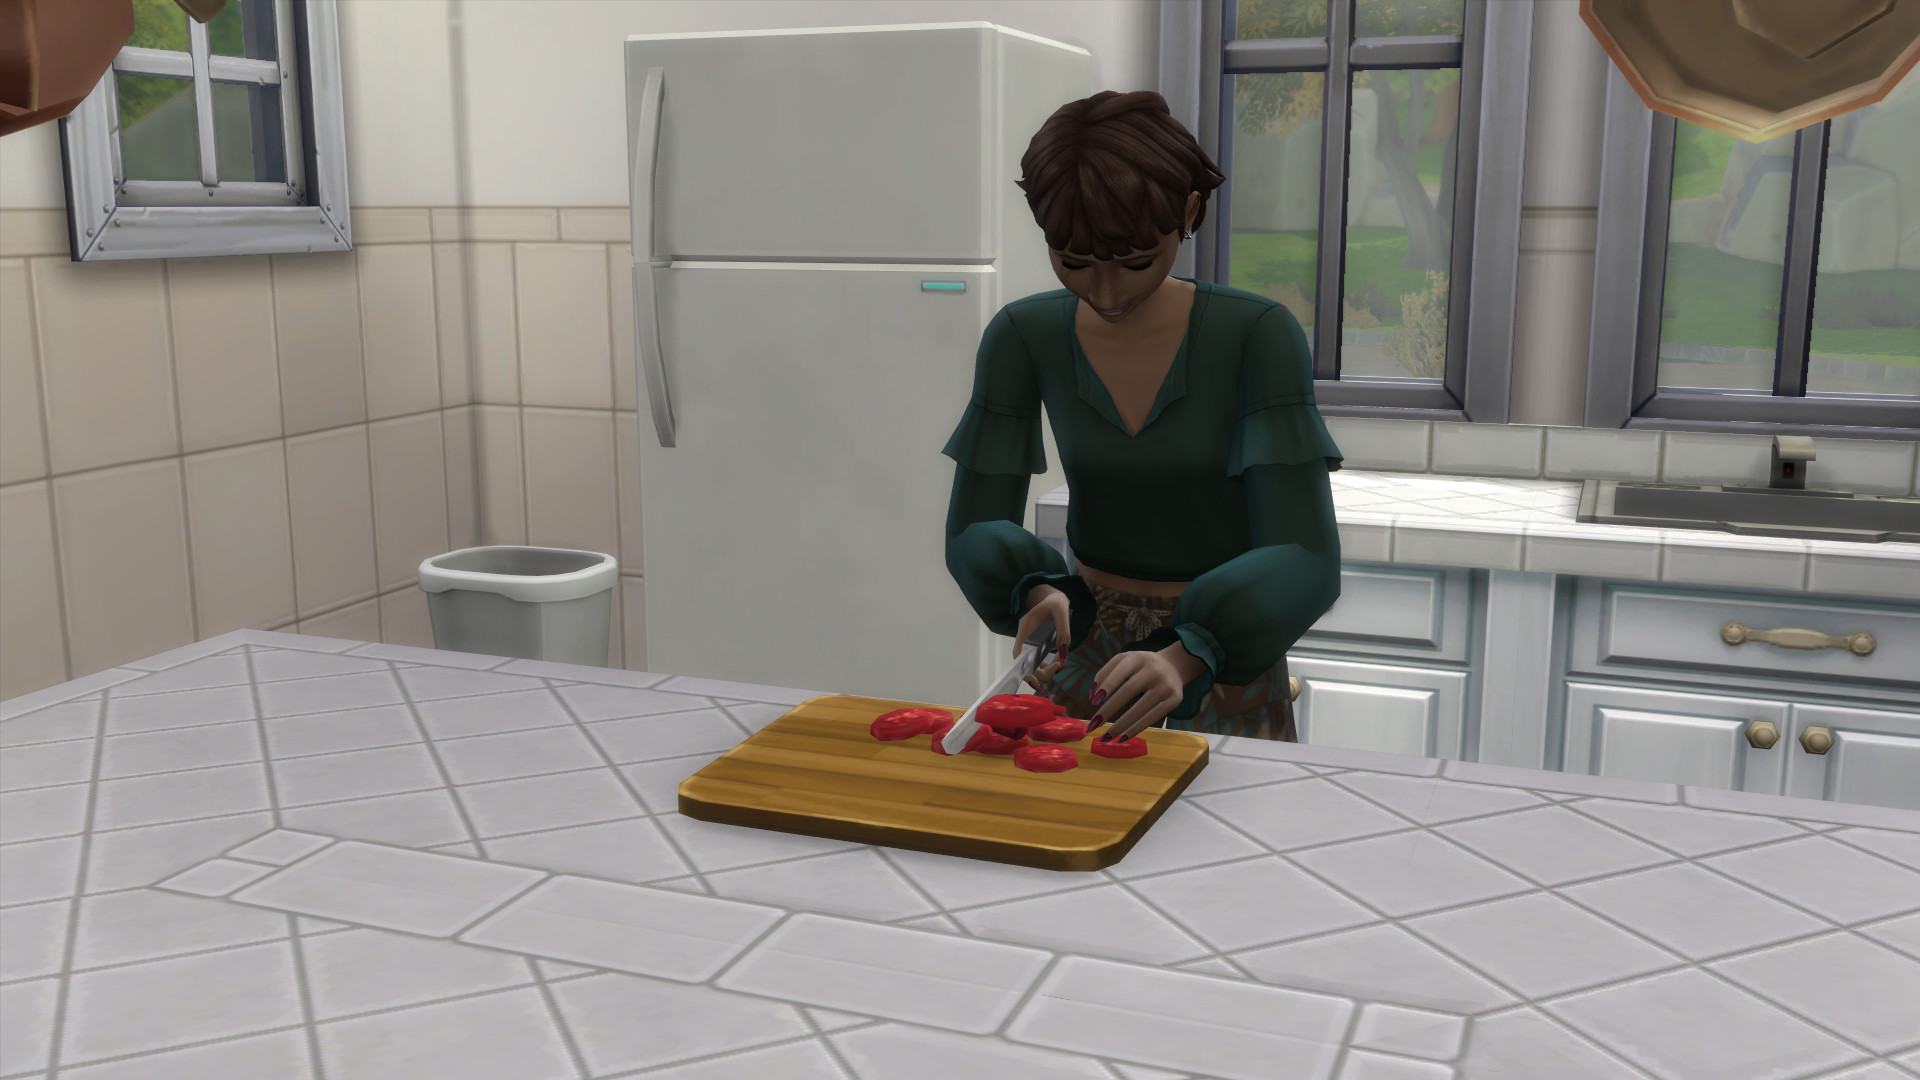 The Sims 4 - Una giovane donna con un top verde taglia i pomodori su un tagliere.